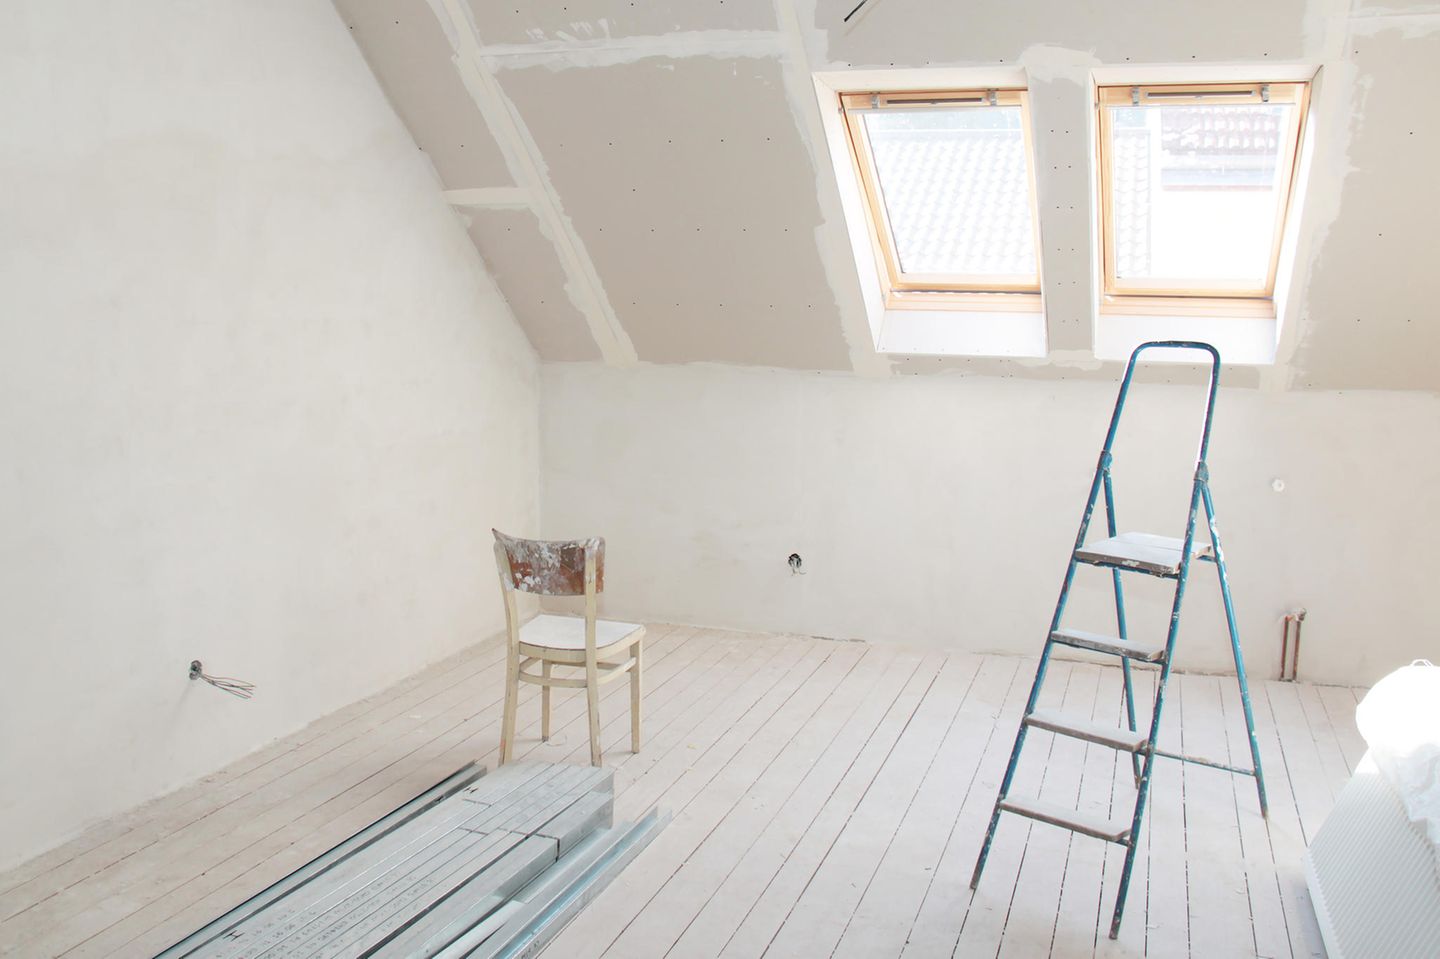 Dachboden ausbauen: Stuhl und Leiter im leeren Dachboden